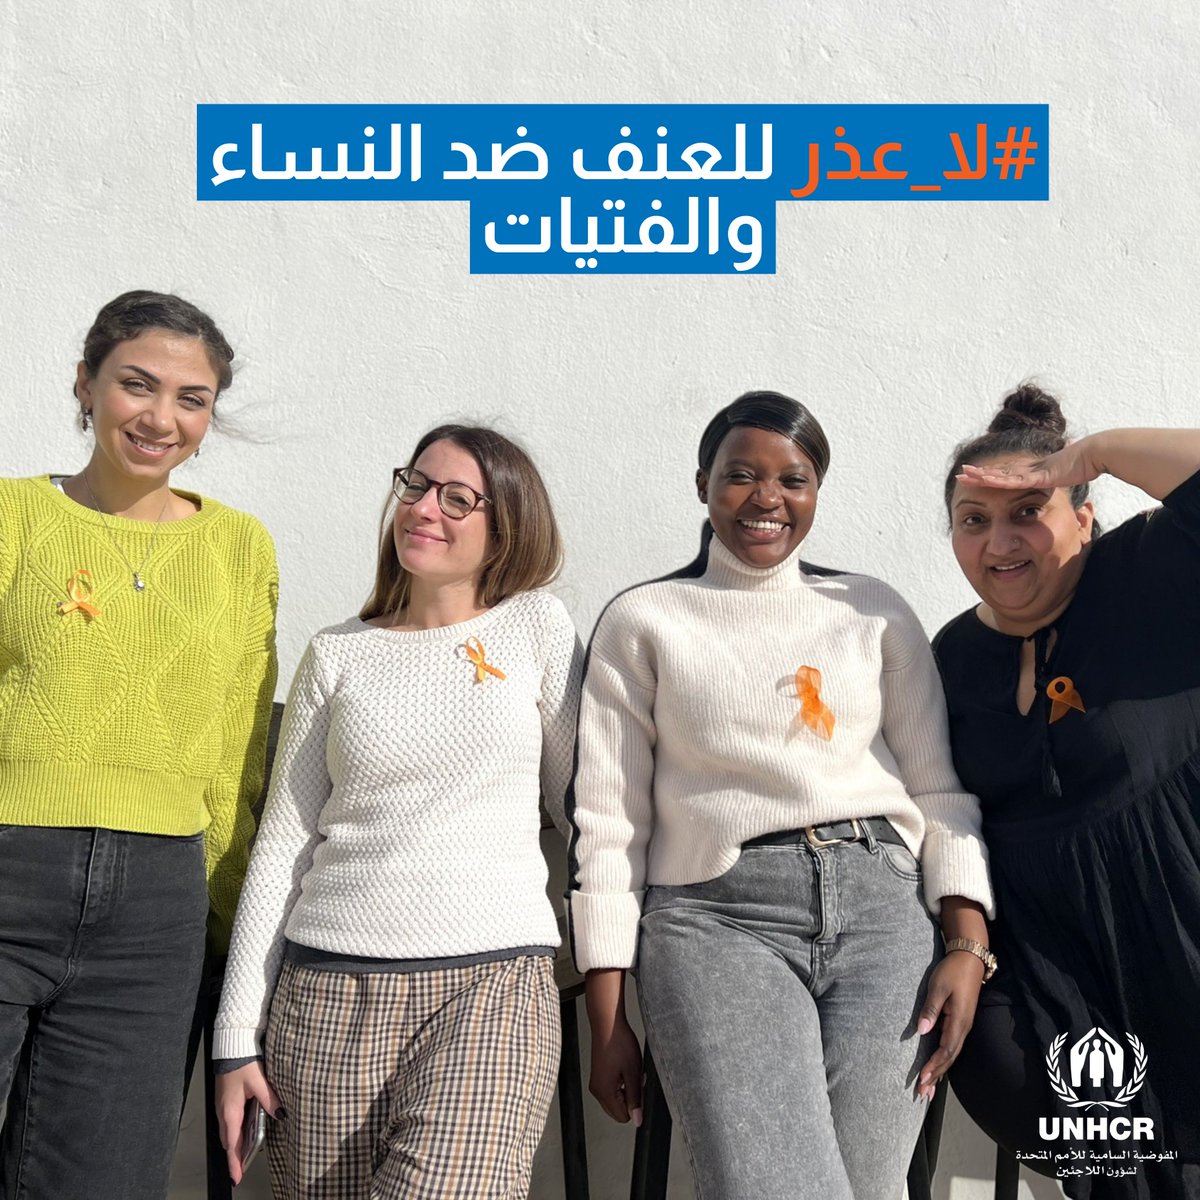 ♀️ #لا_عذر للعنف ضد النساء والفتيات. انضم إلى فريق مفوضية اللاجئين في ليبيا لدعم حملة #16يوما🎗️